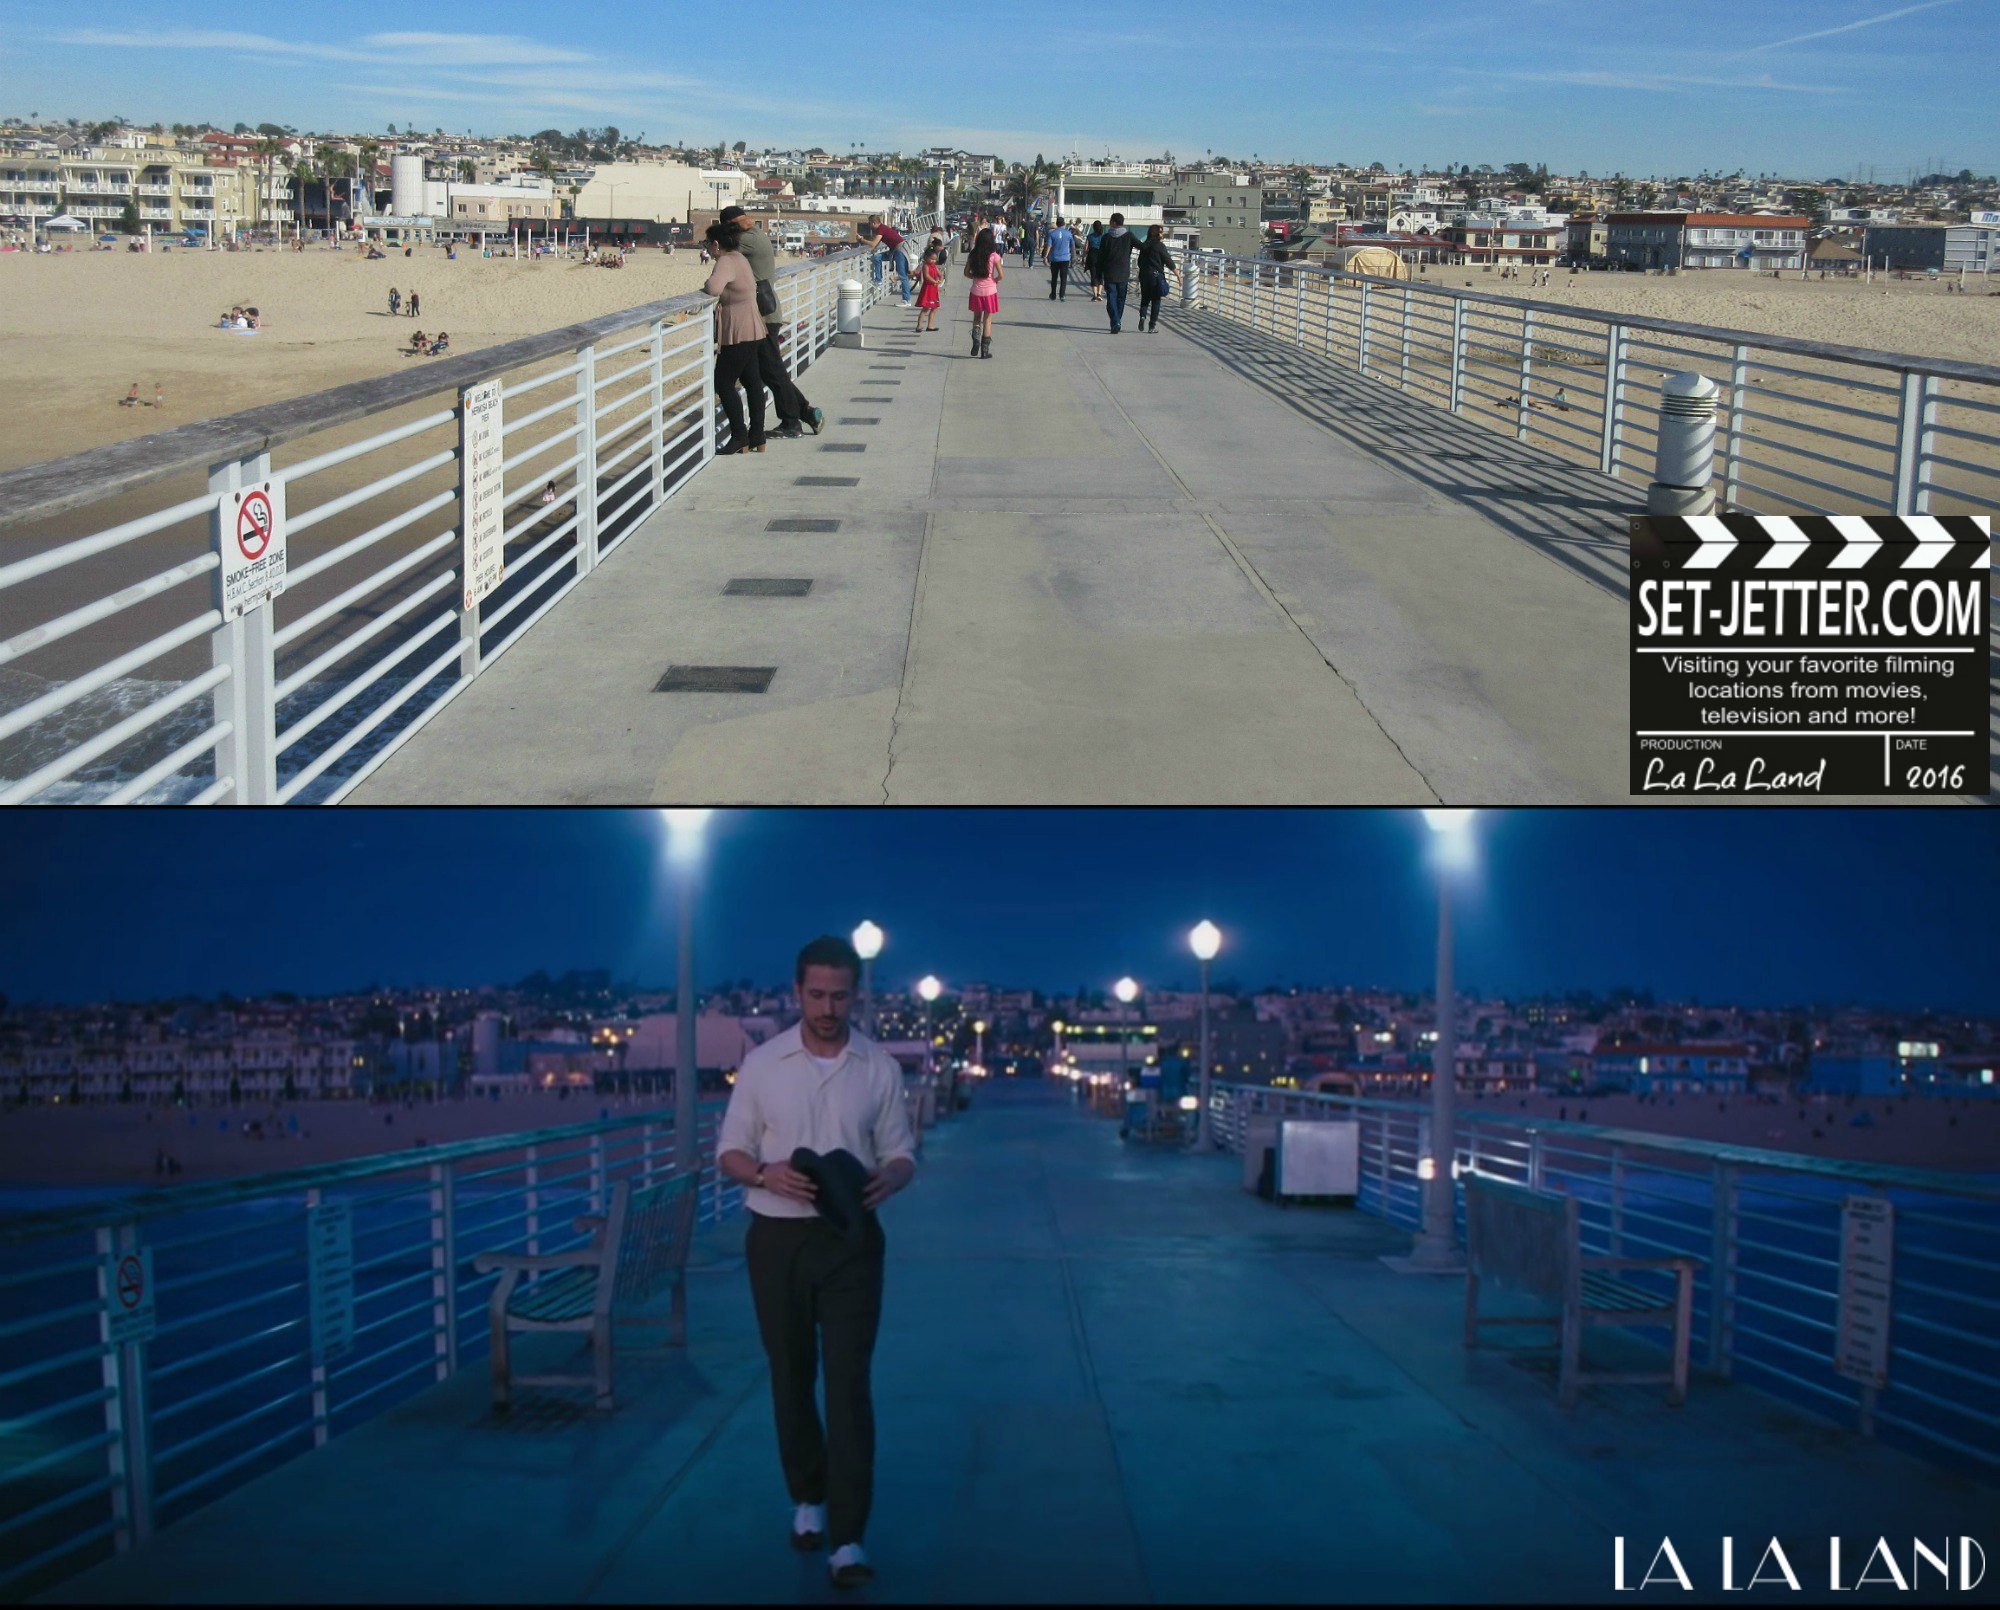 La La Land comparison 47.jpg